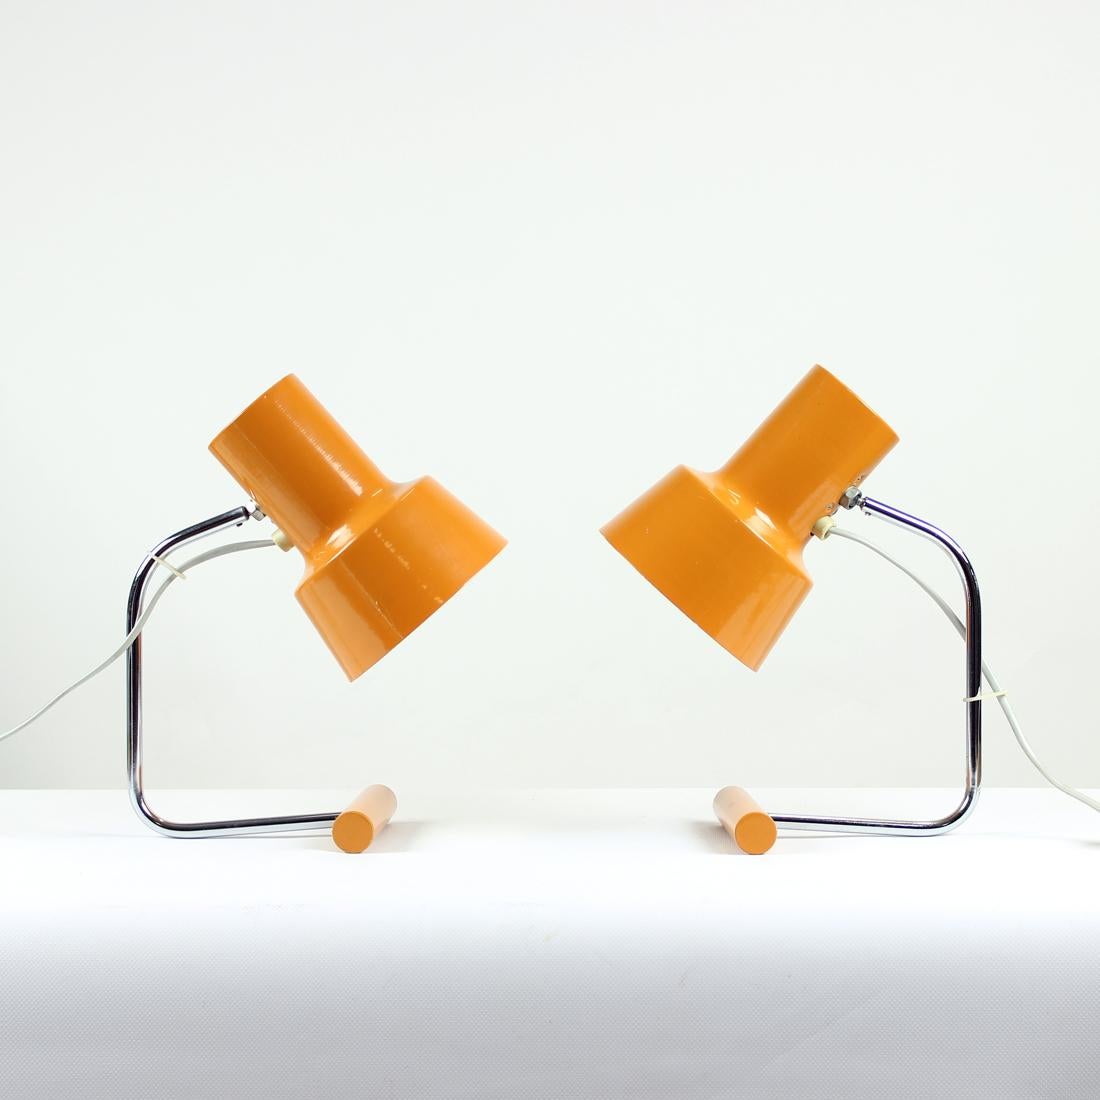 Set aus zwei schönen Tischlampen der Firma Lidokov, entworfen von Josef Hurka. Die in den 1960er Jahren hergestellten Lampen sind das ikonische Werk des Designers. Die verchromte Konstruktion verbindet den Metallsockel und das orangefarbene Schild.